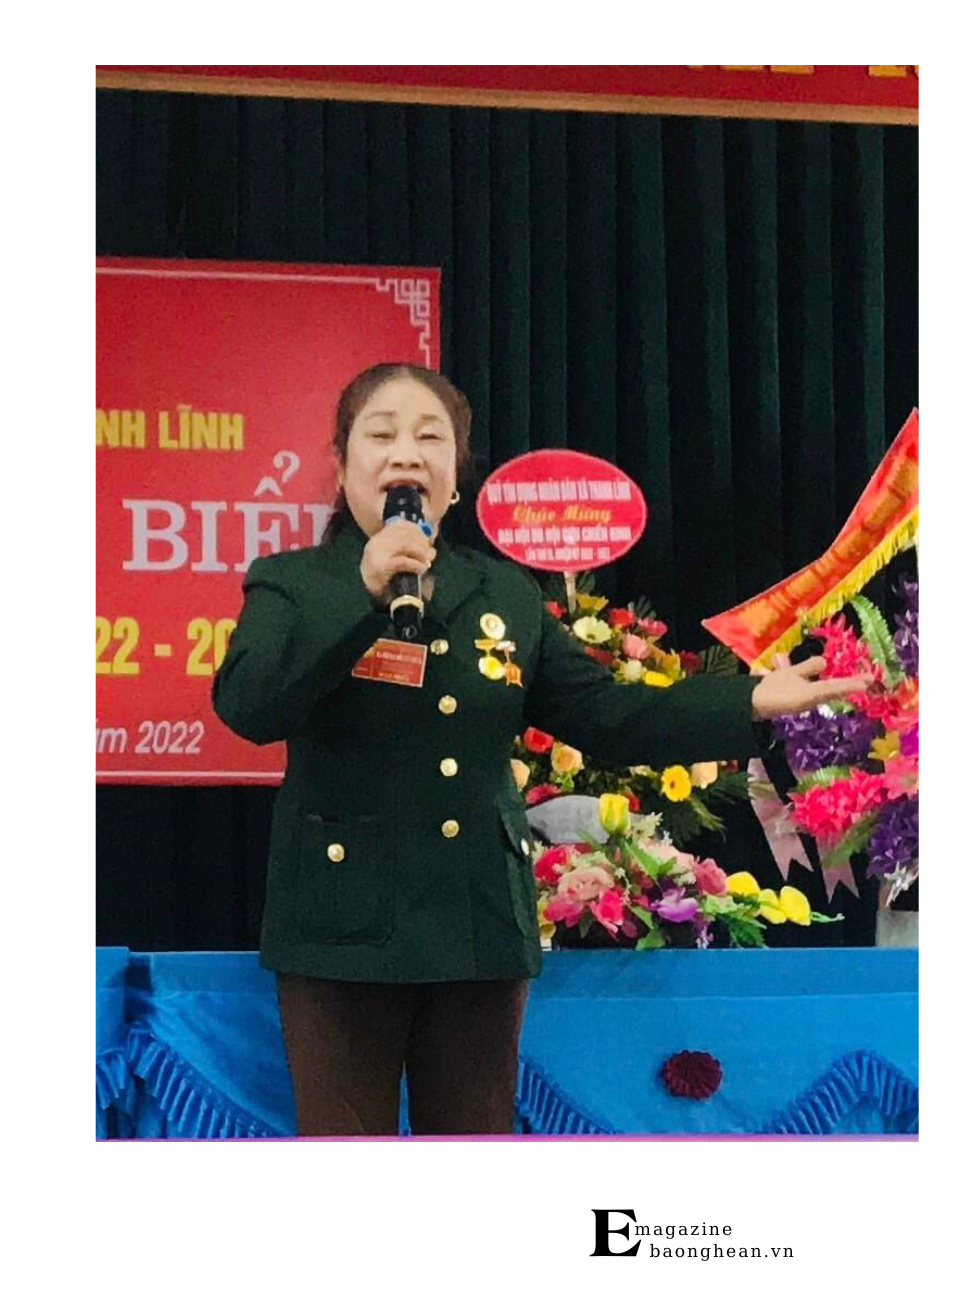 NNƯT Nguyễn Thị Tâm là cựu chiến binh và là vợ liệt sỹ được phong tặng danh hiệu giỏi việc nước, đảm việc nhà.